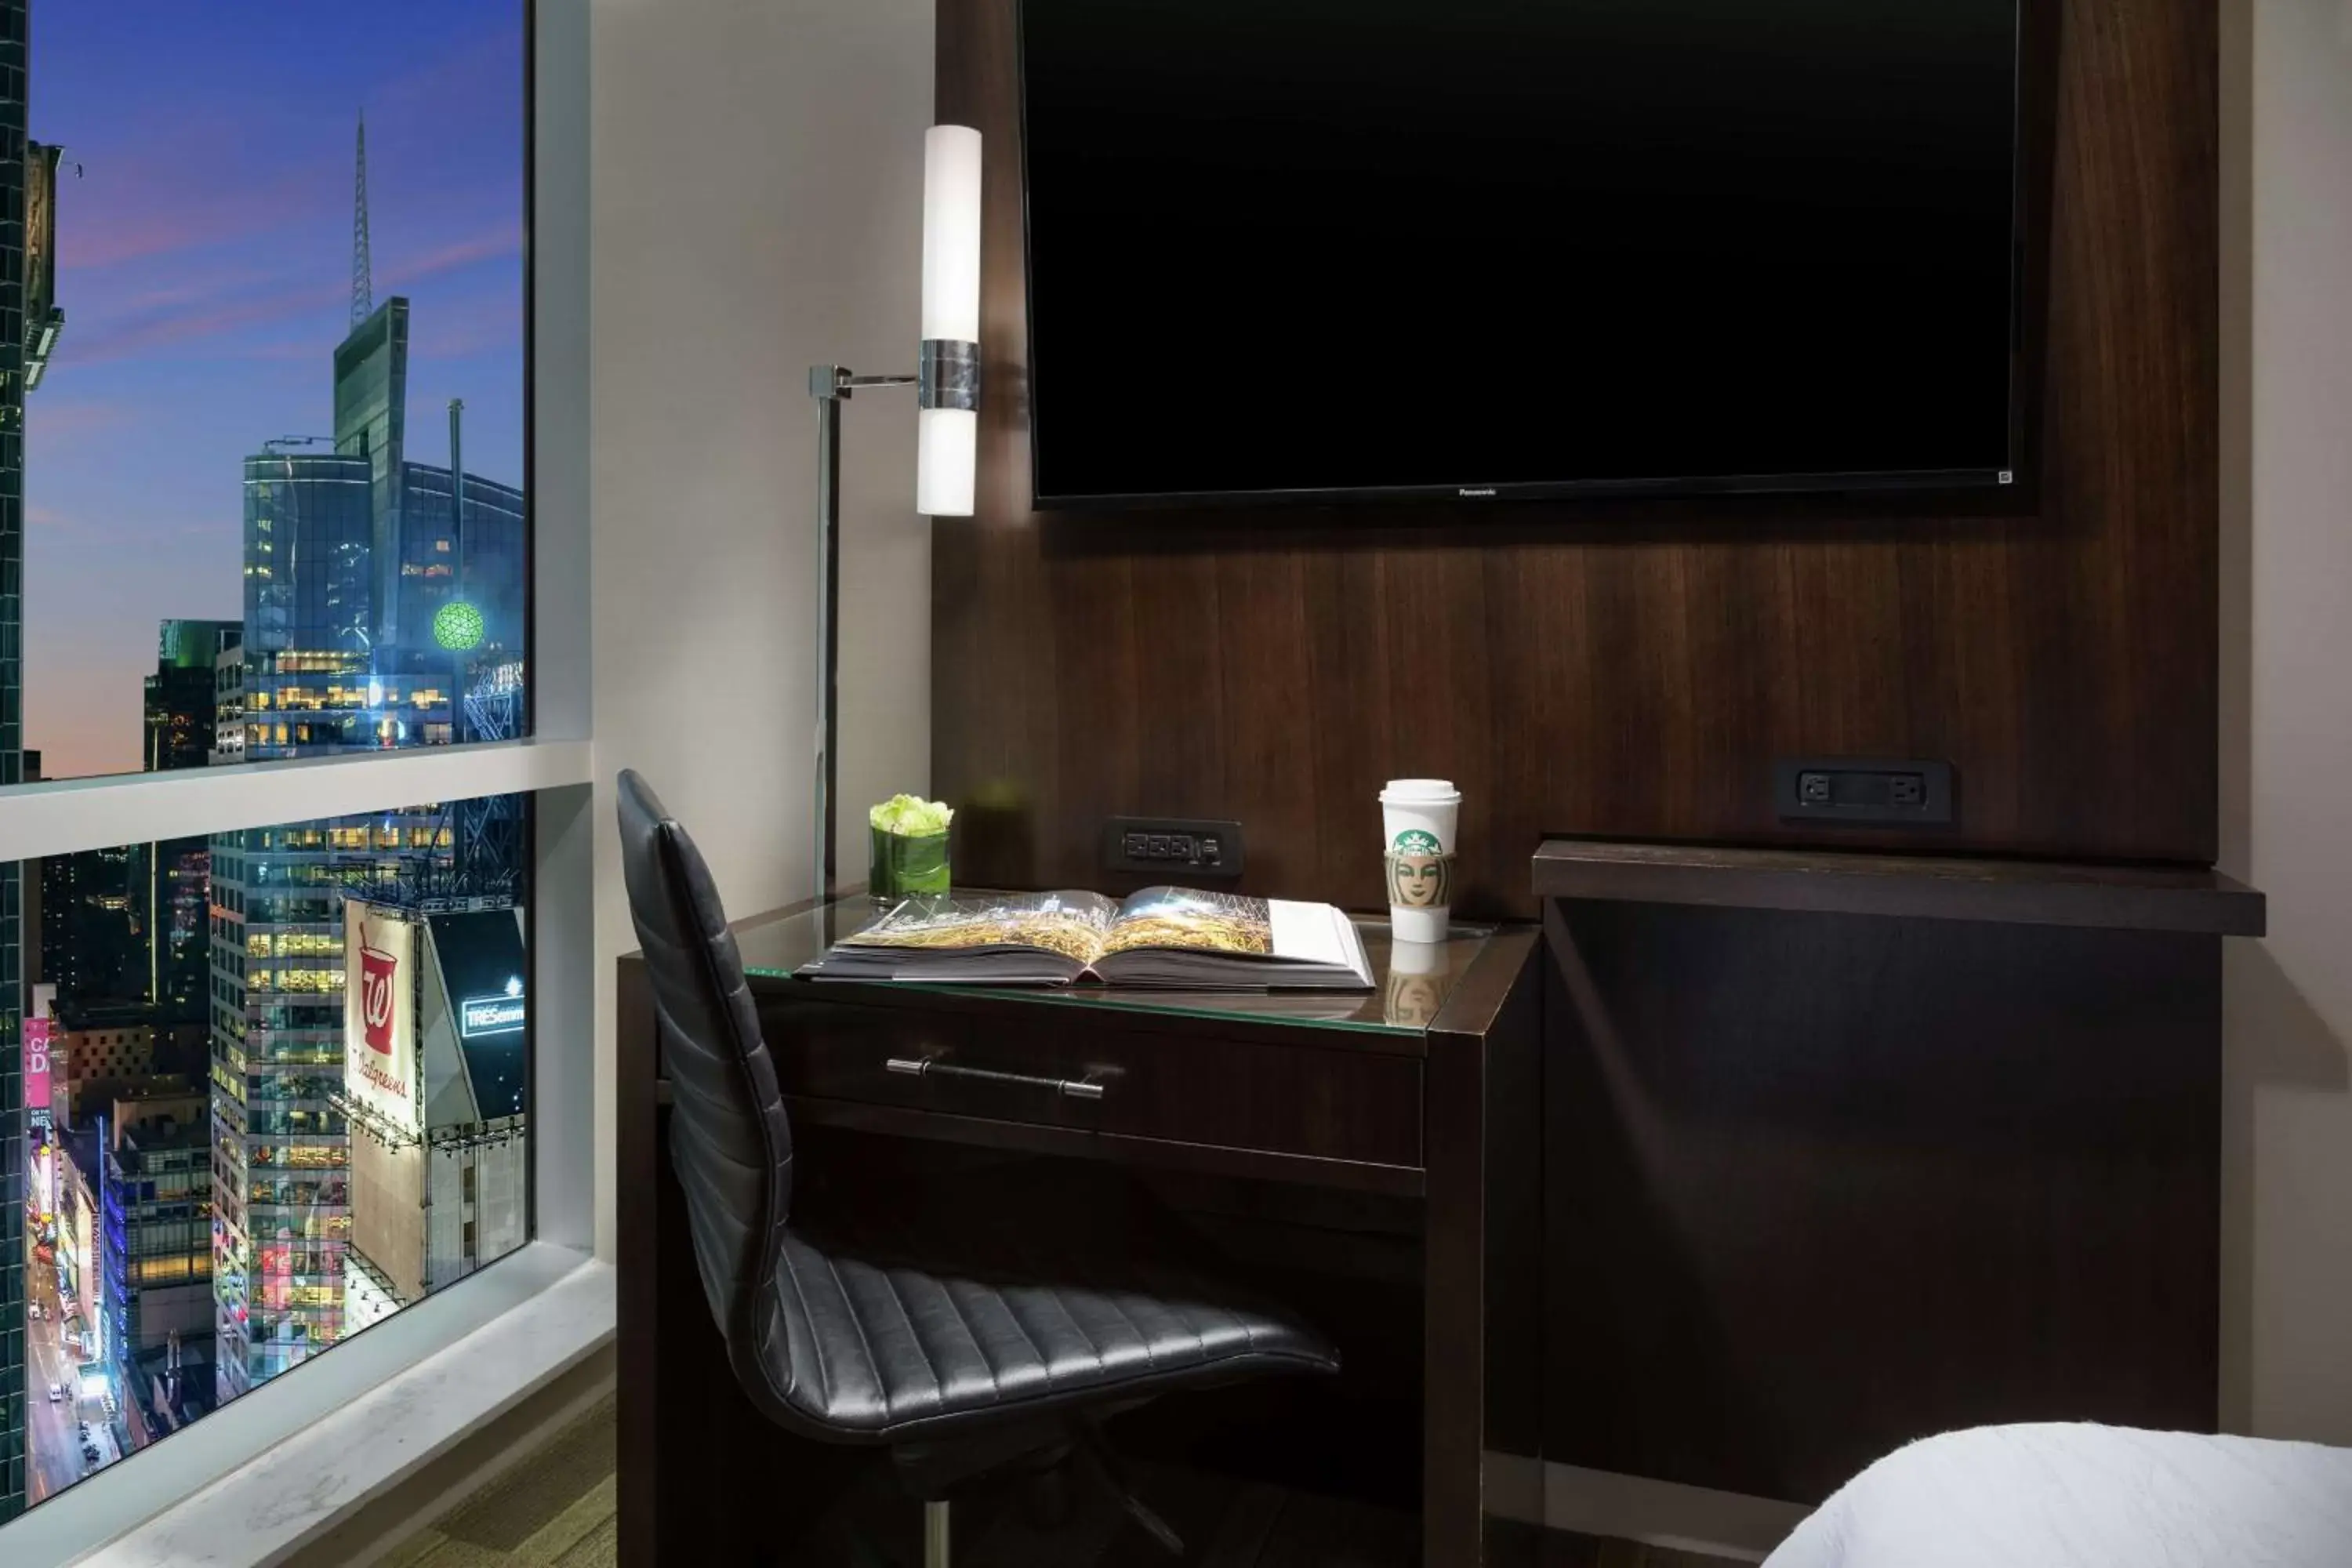 Bedroom, TV/Entertainment Center in Hilton Garden Inn New York - Times Square Central